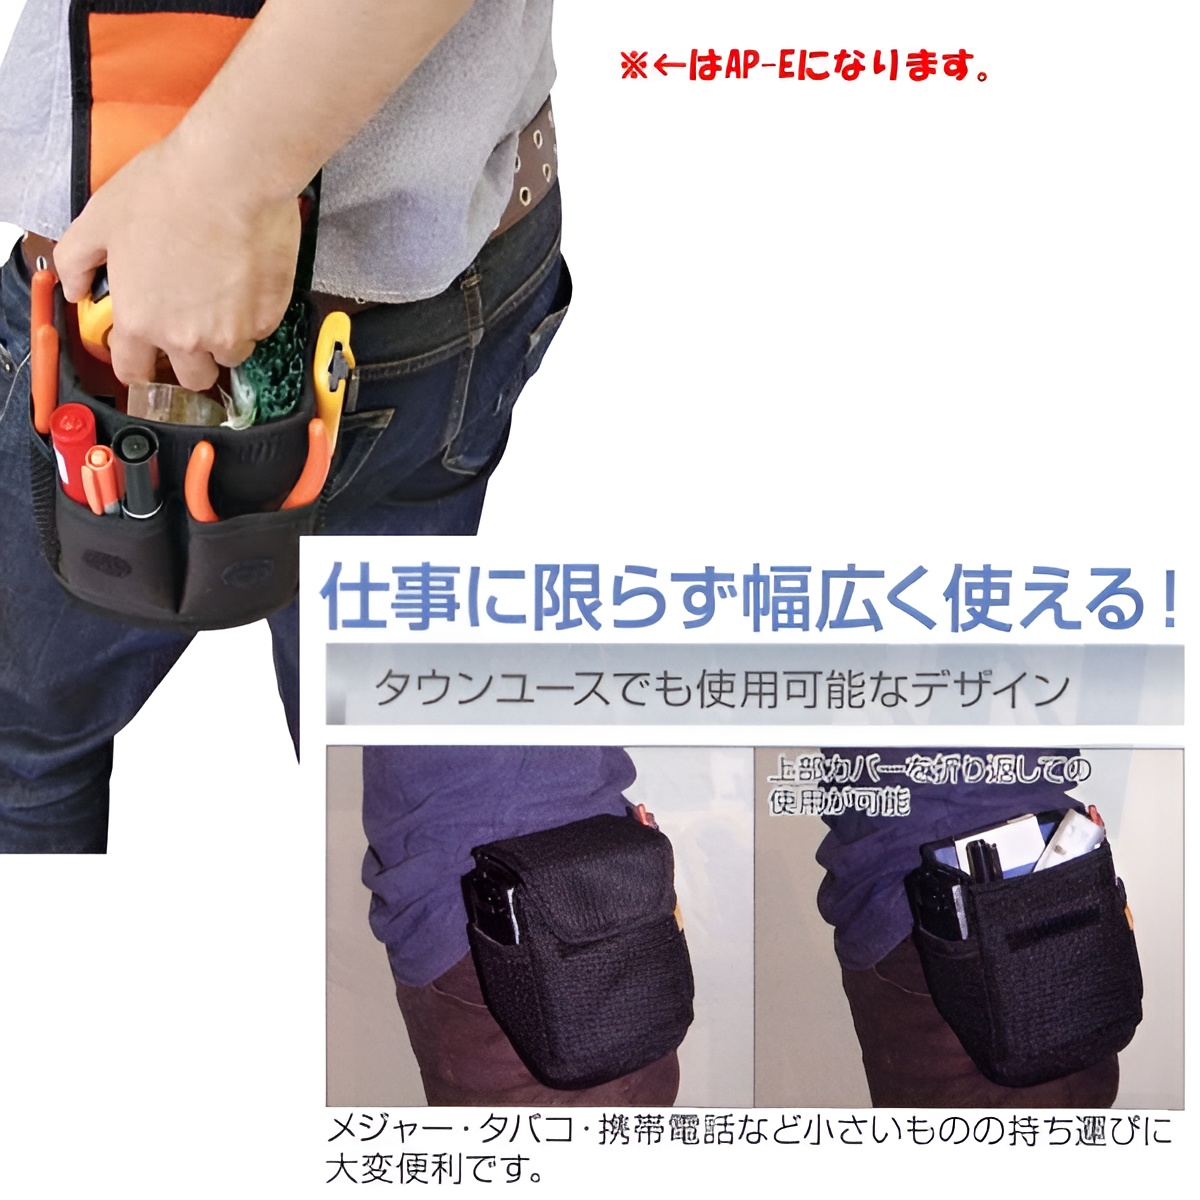 Hình ảnh 9 của mặt hàng Túi đồ nghề Fujiya AP-E